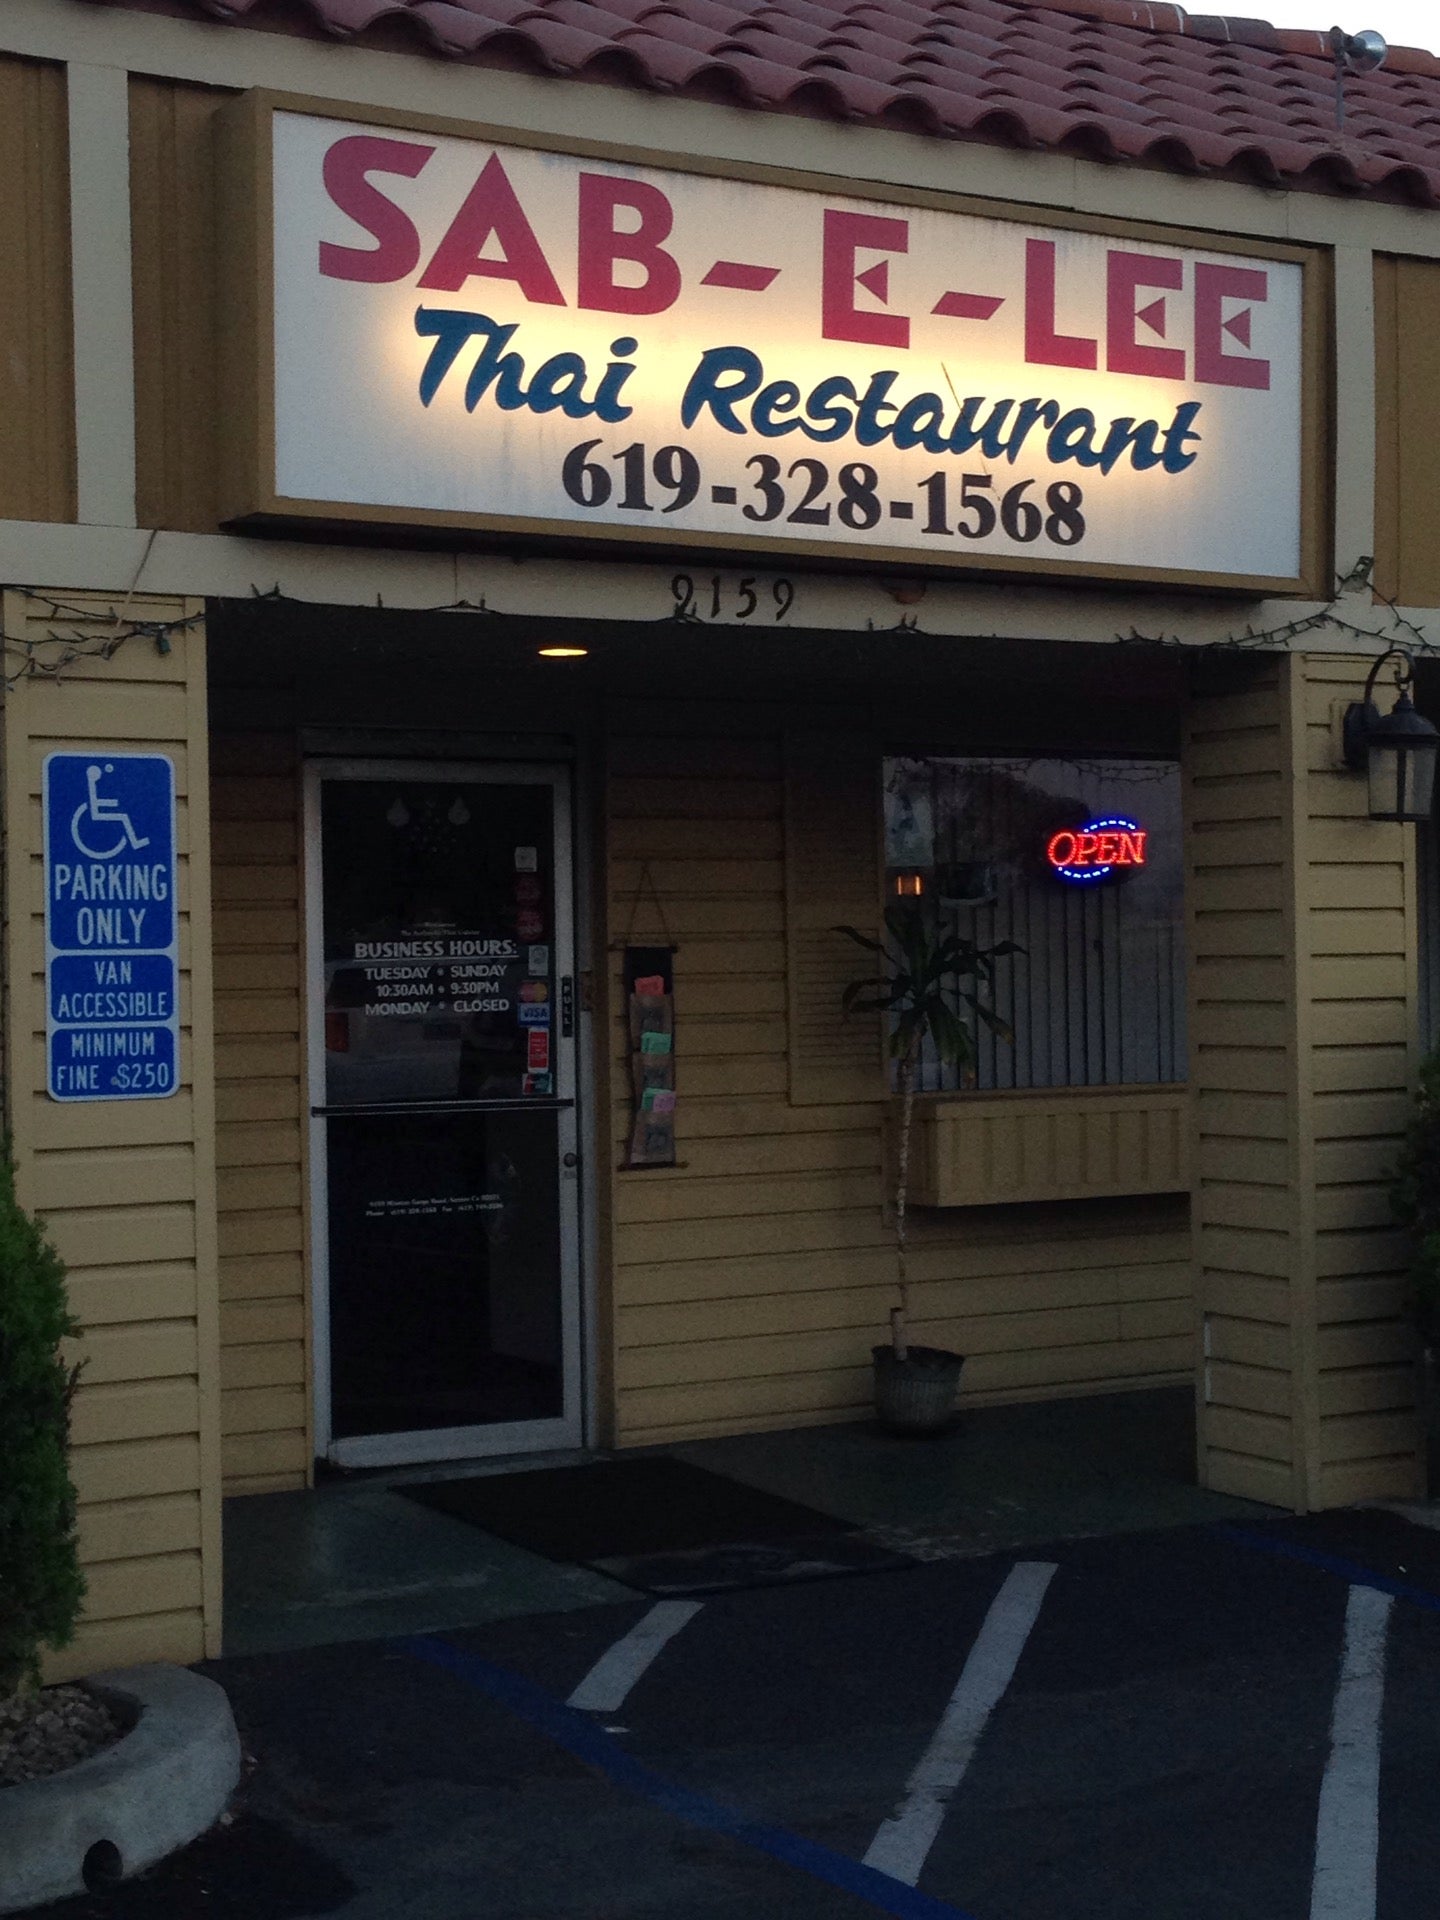 Sab-E-Lee, 9159 Mission Gorge Rd, Santee, CA, Thai - MapQuest